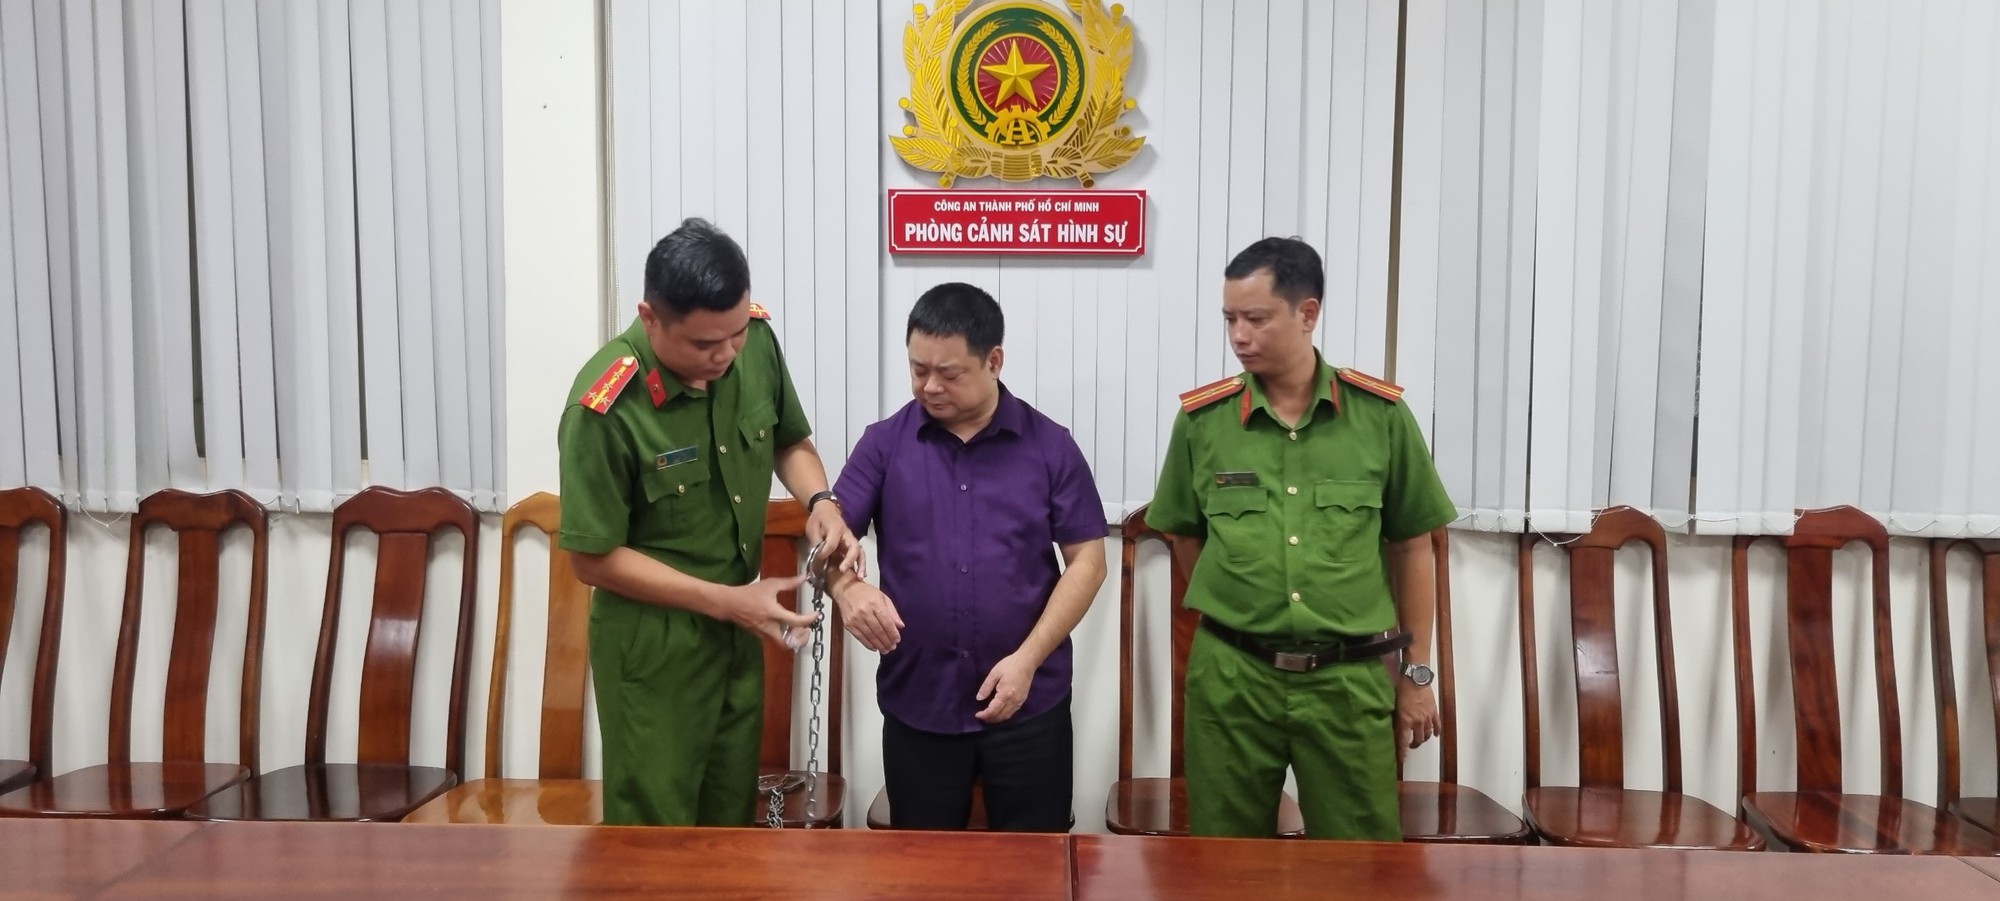 Bắt người nhận 100.000 USD chạy án cho nguyên Cục trưởng Cục đăng kiểm Việt Nam - Ảnh 1.